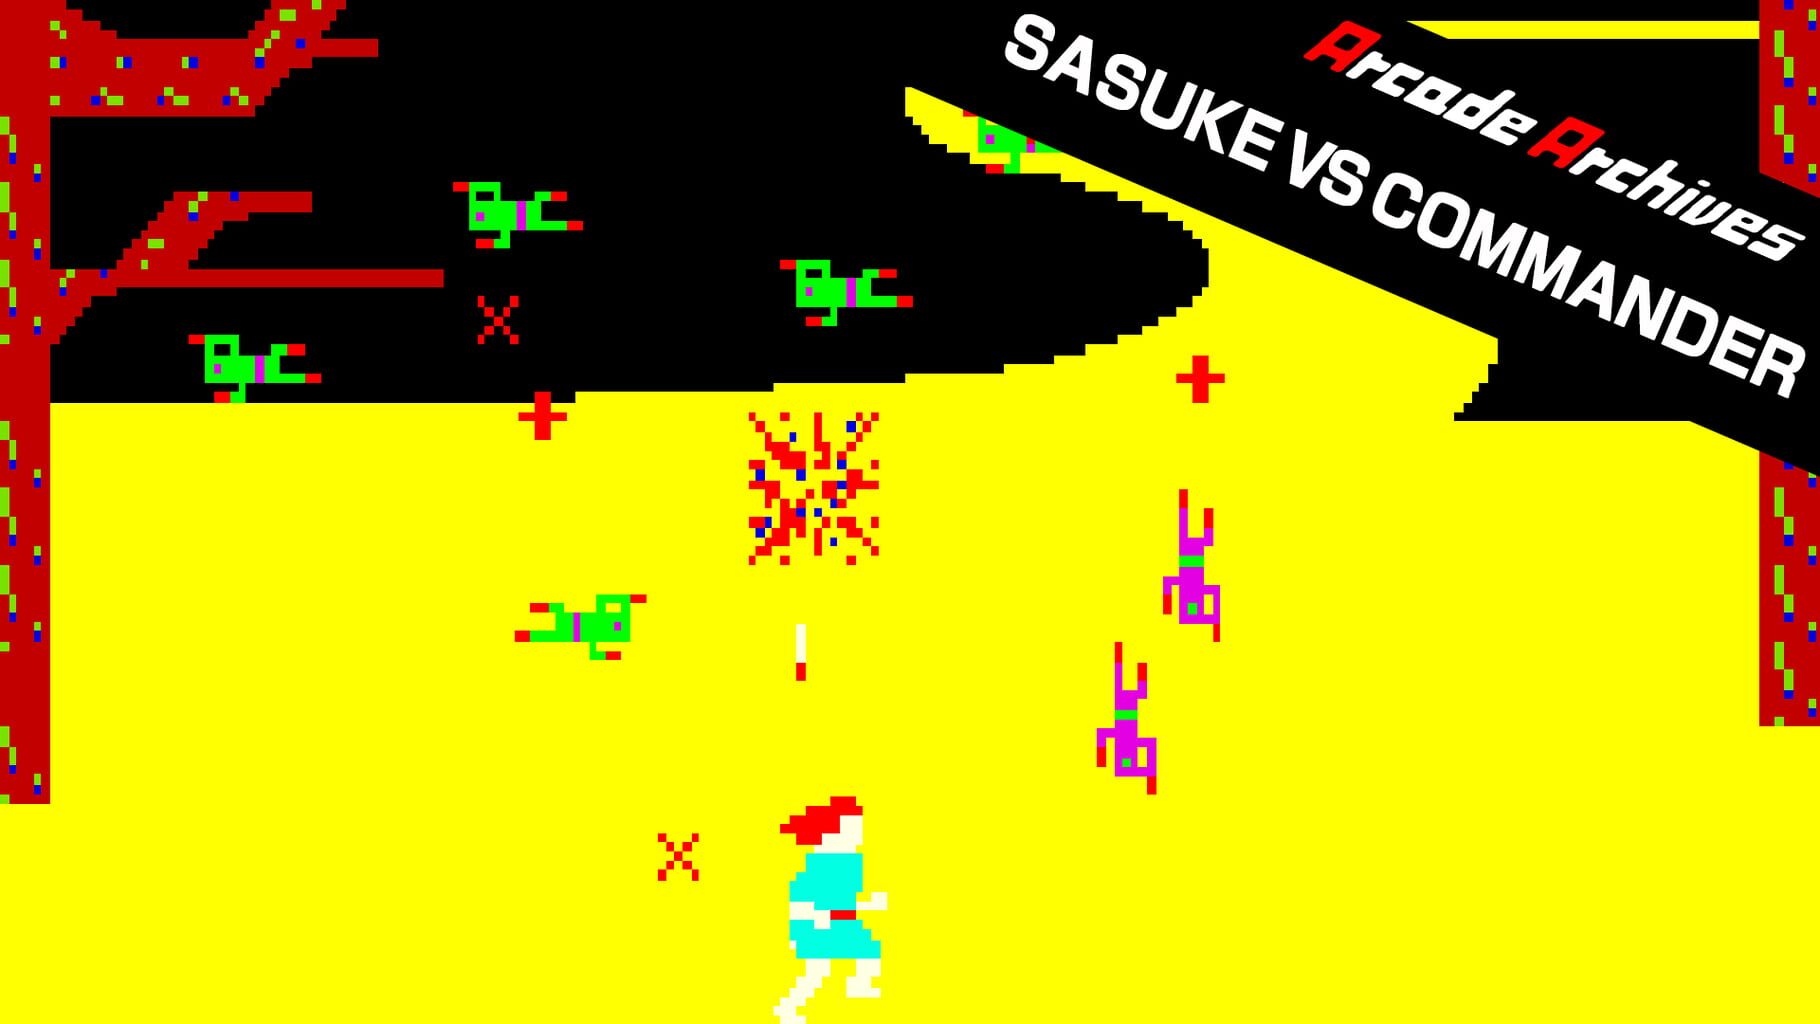 Arcade Archives: Sasuke vs Commander artwork